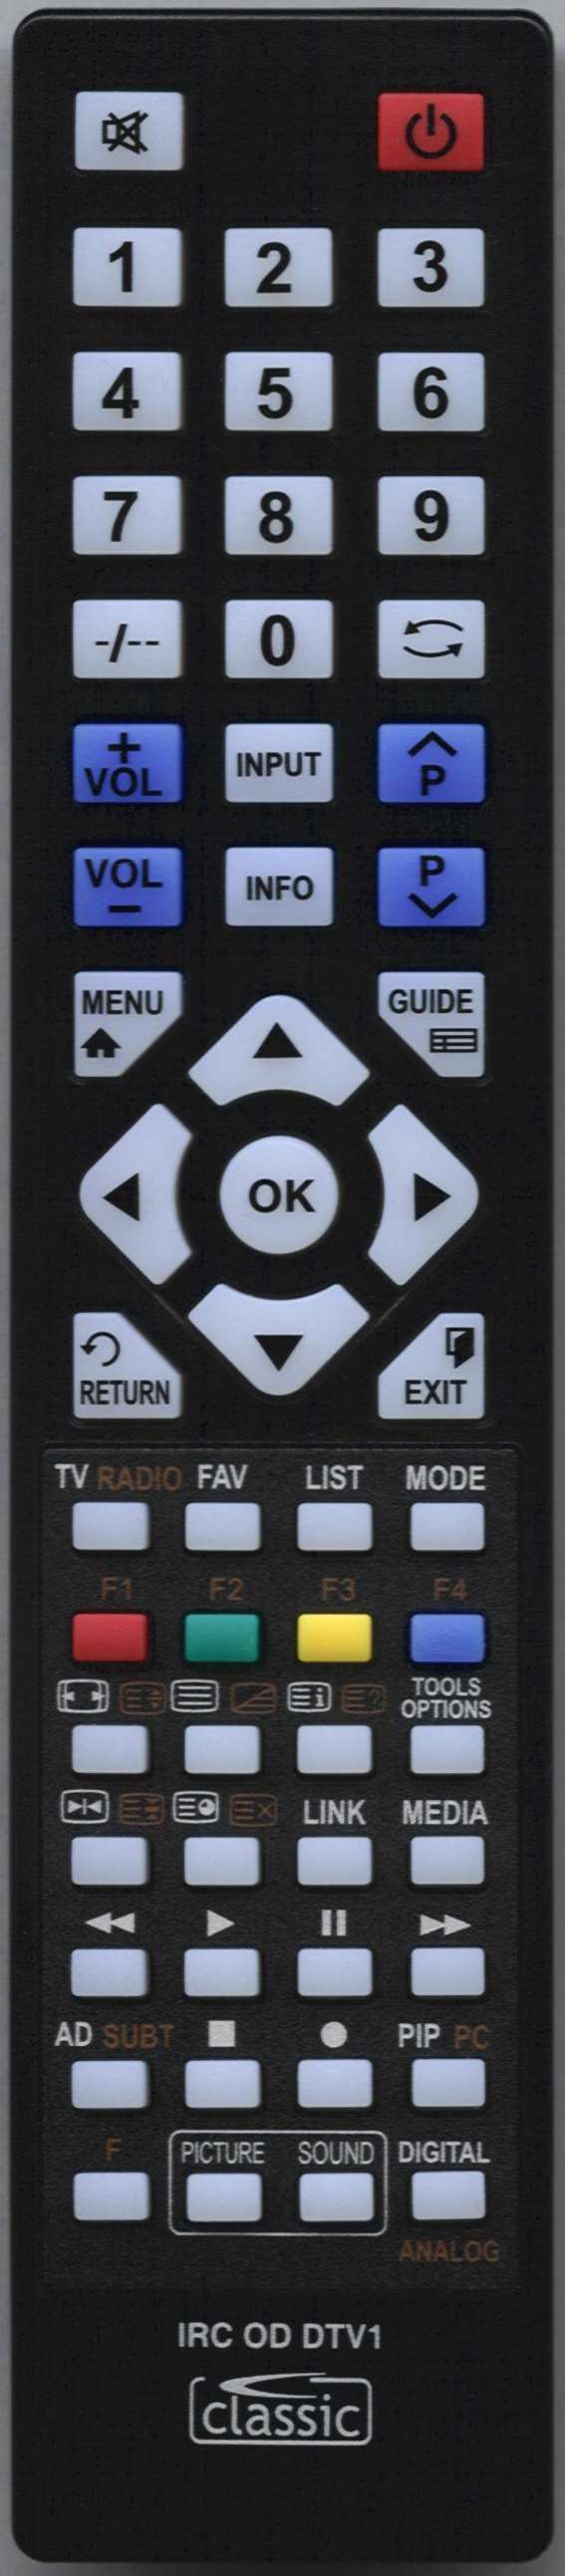 AKURA APL3268-3U Remote Control